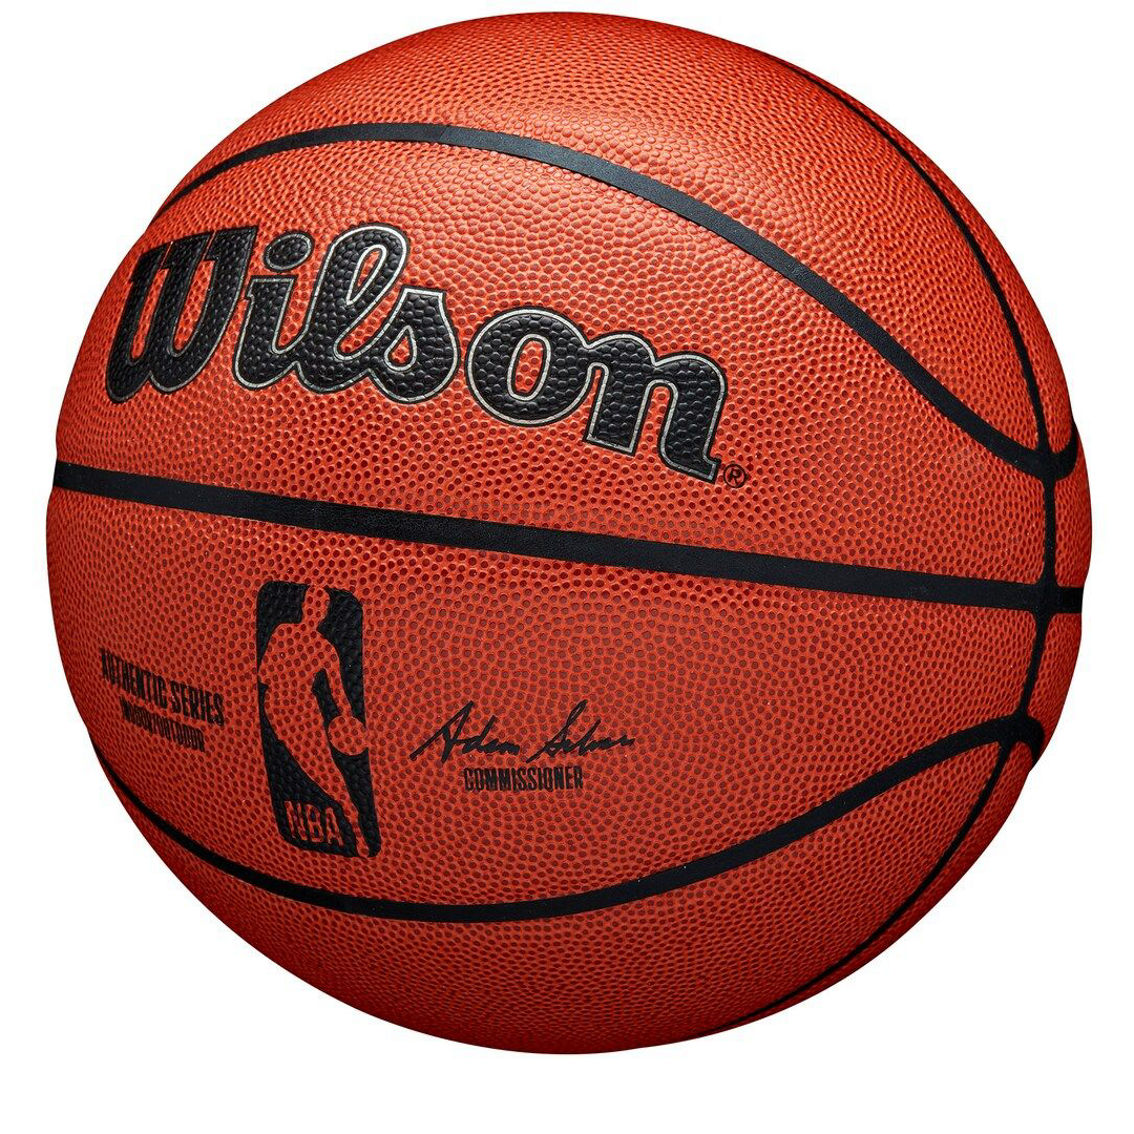 Wilson Wilson NBA Authentic Series Indoor/Outdoor Basketball - Image 4 of 4